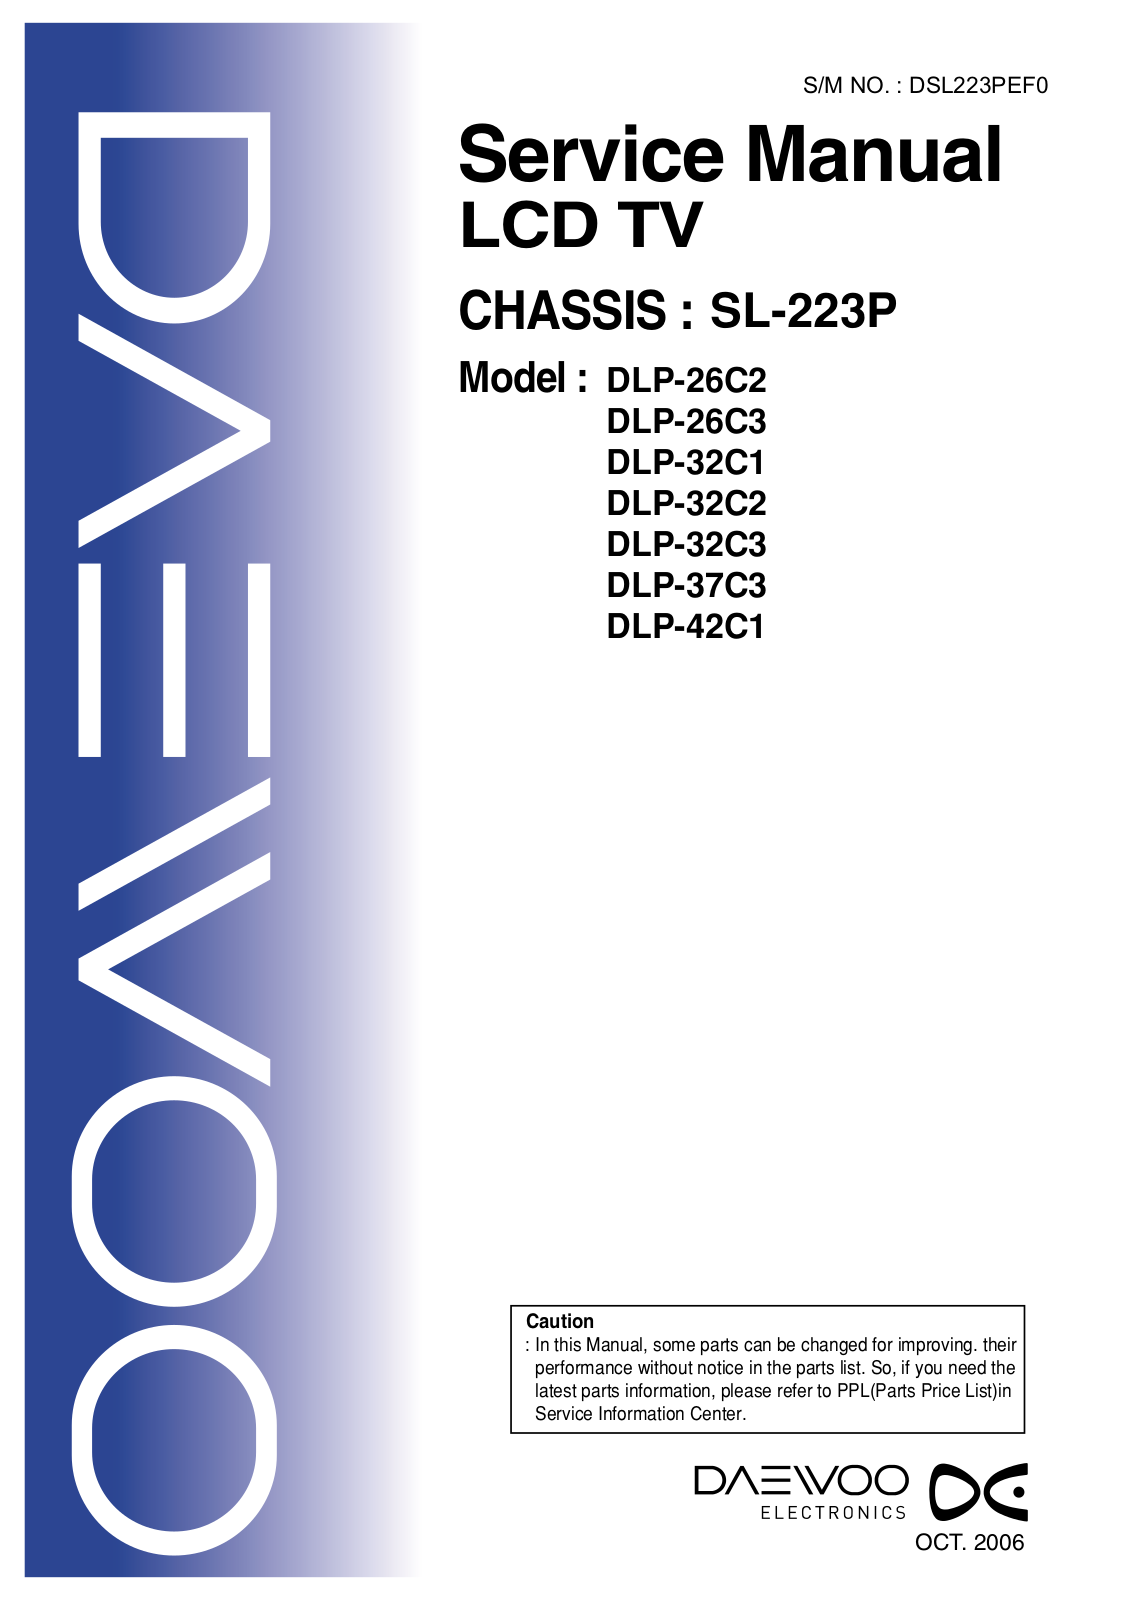 Daewoo DLP-26C2, DLP-26C3, DLP-32C1, DLP-32C2, DLP-32C3 Service manual